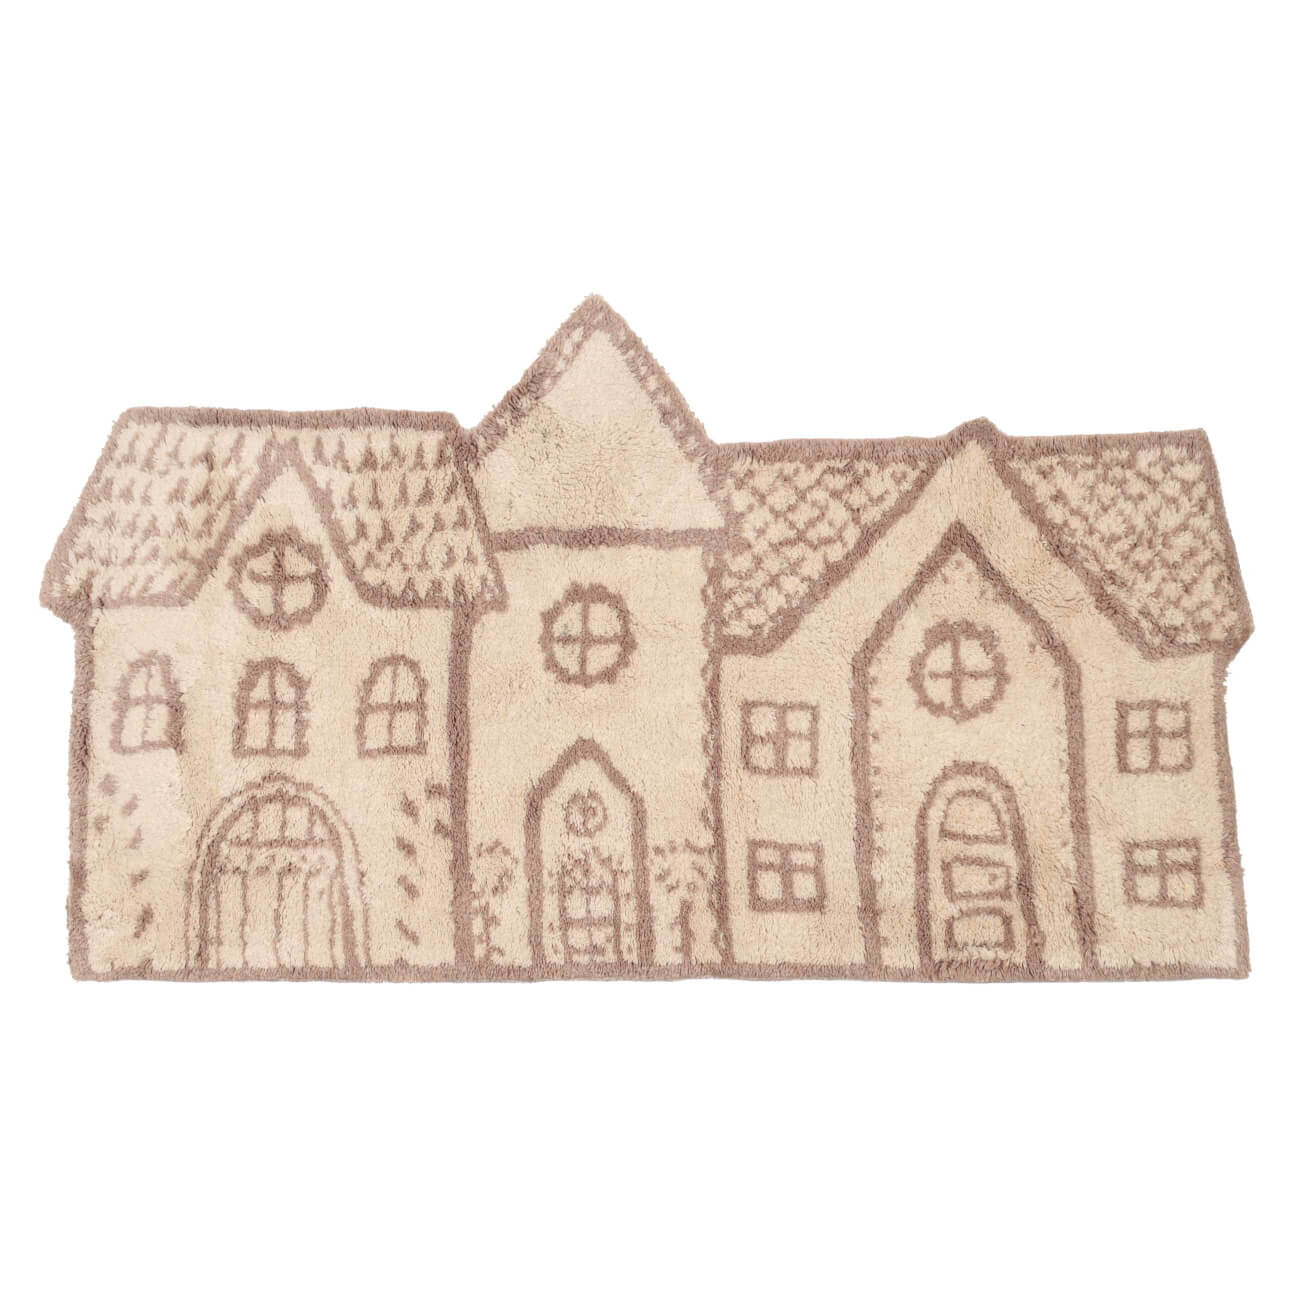 Коврик, 50x80 см, полиэстер, бежево-коричневый, Дома, Frosty sparks коврик для дома доляна малахит 43×120 см зелёный